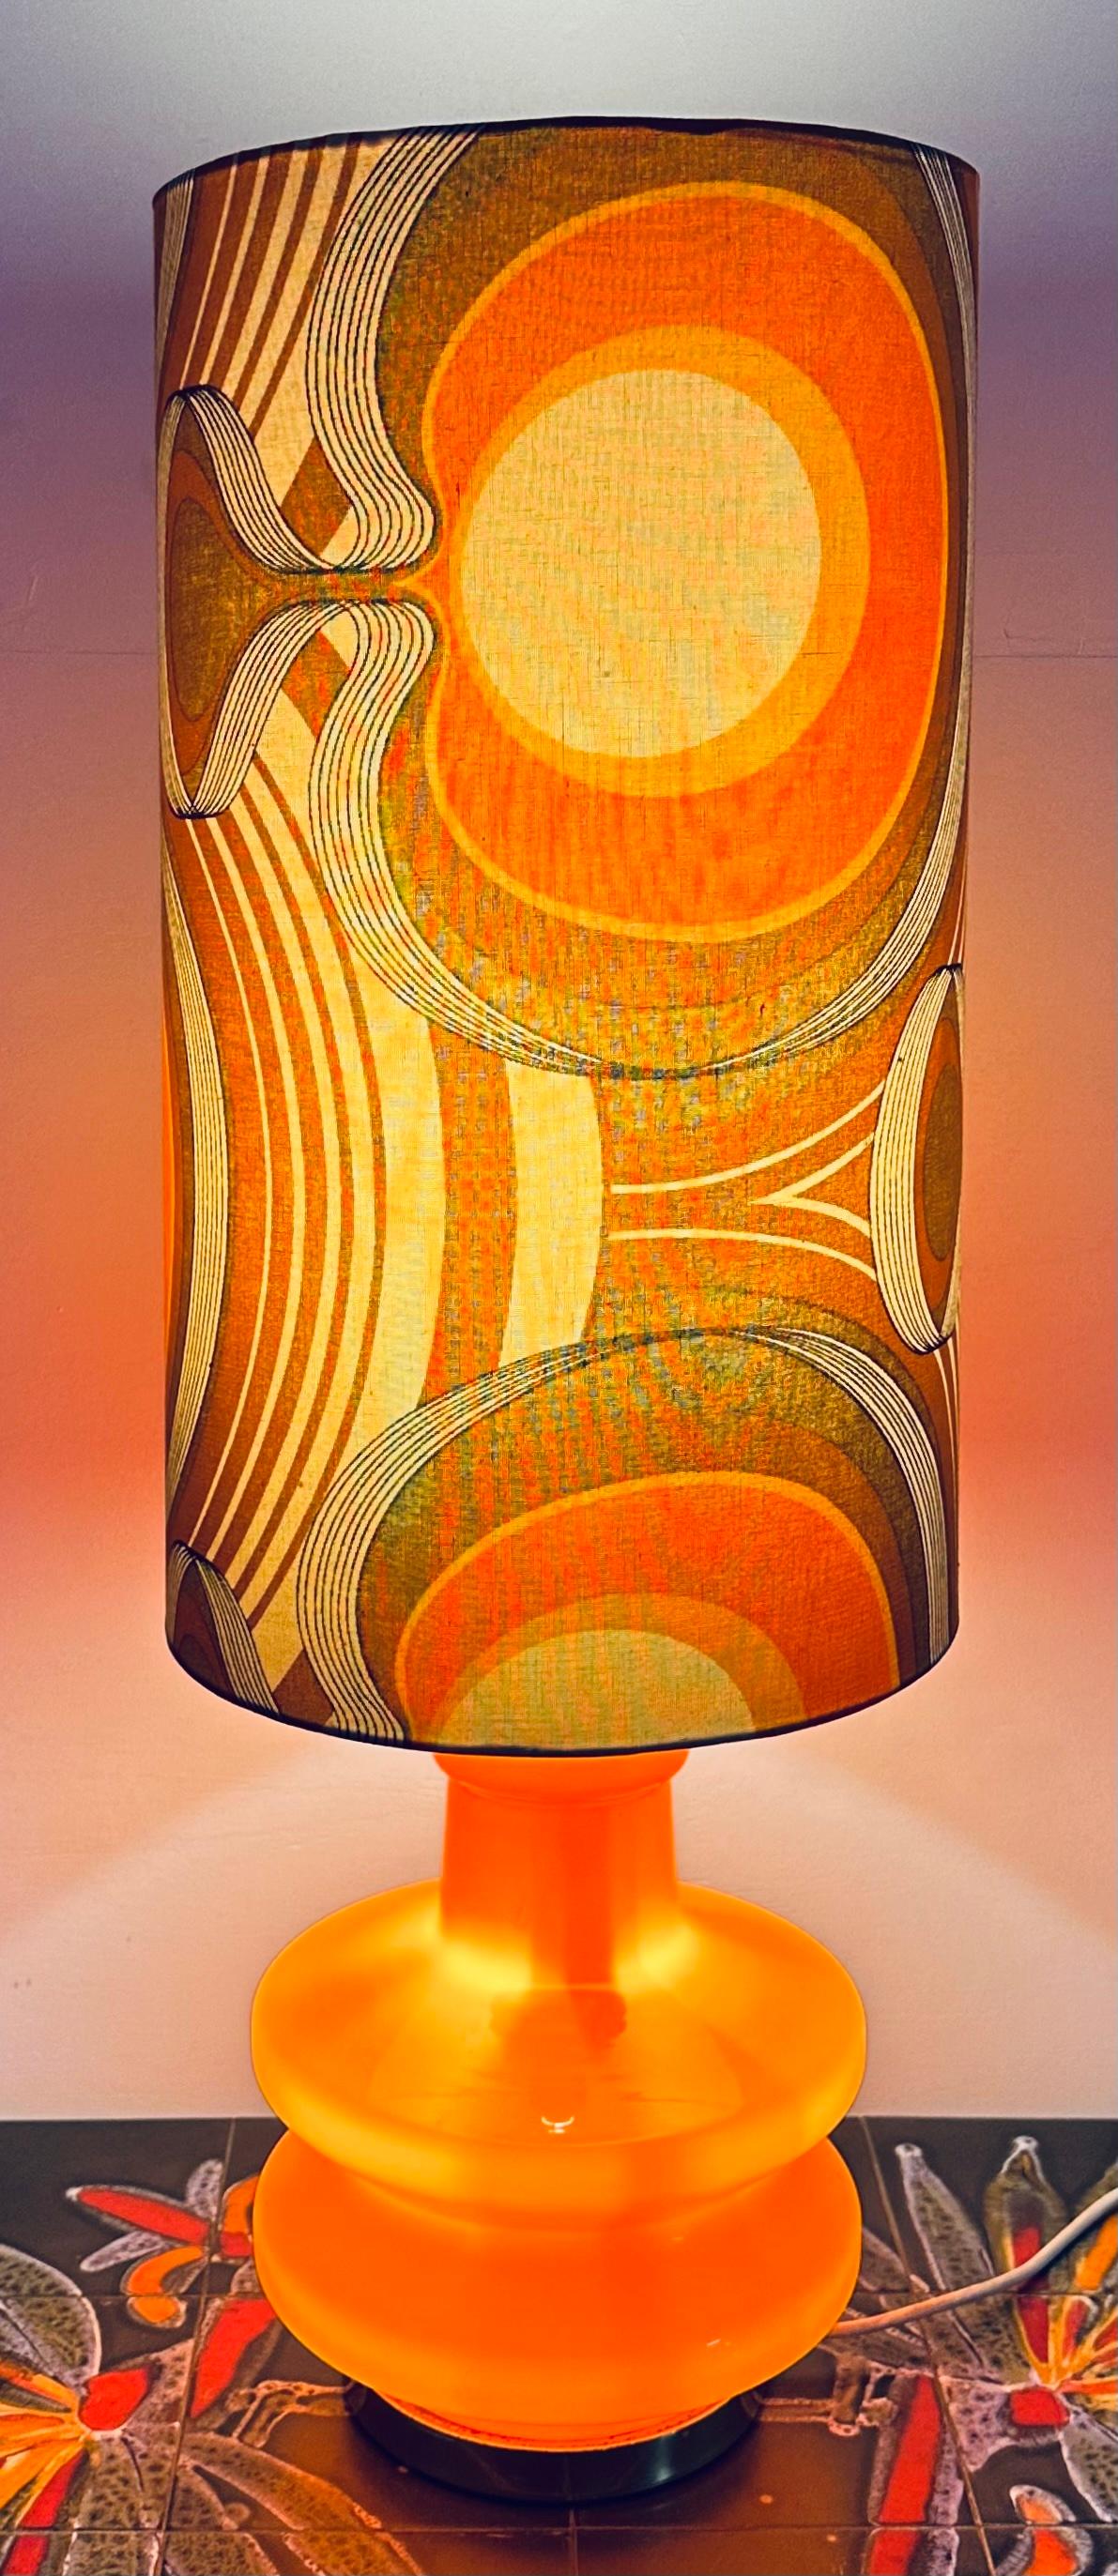 Lampe de table en verre orange éclairé, de style space-age et futuriste, allemande des années 1970.  La base orange éclairée, avec ses accessoires en laiton, nécessite une seule ampoule à vis E14 à l'intérieur.  Pour y accéder, il faut dévisser la